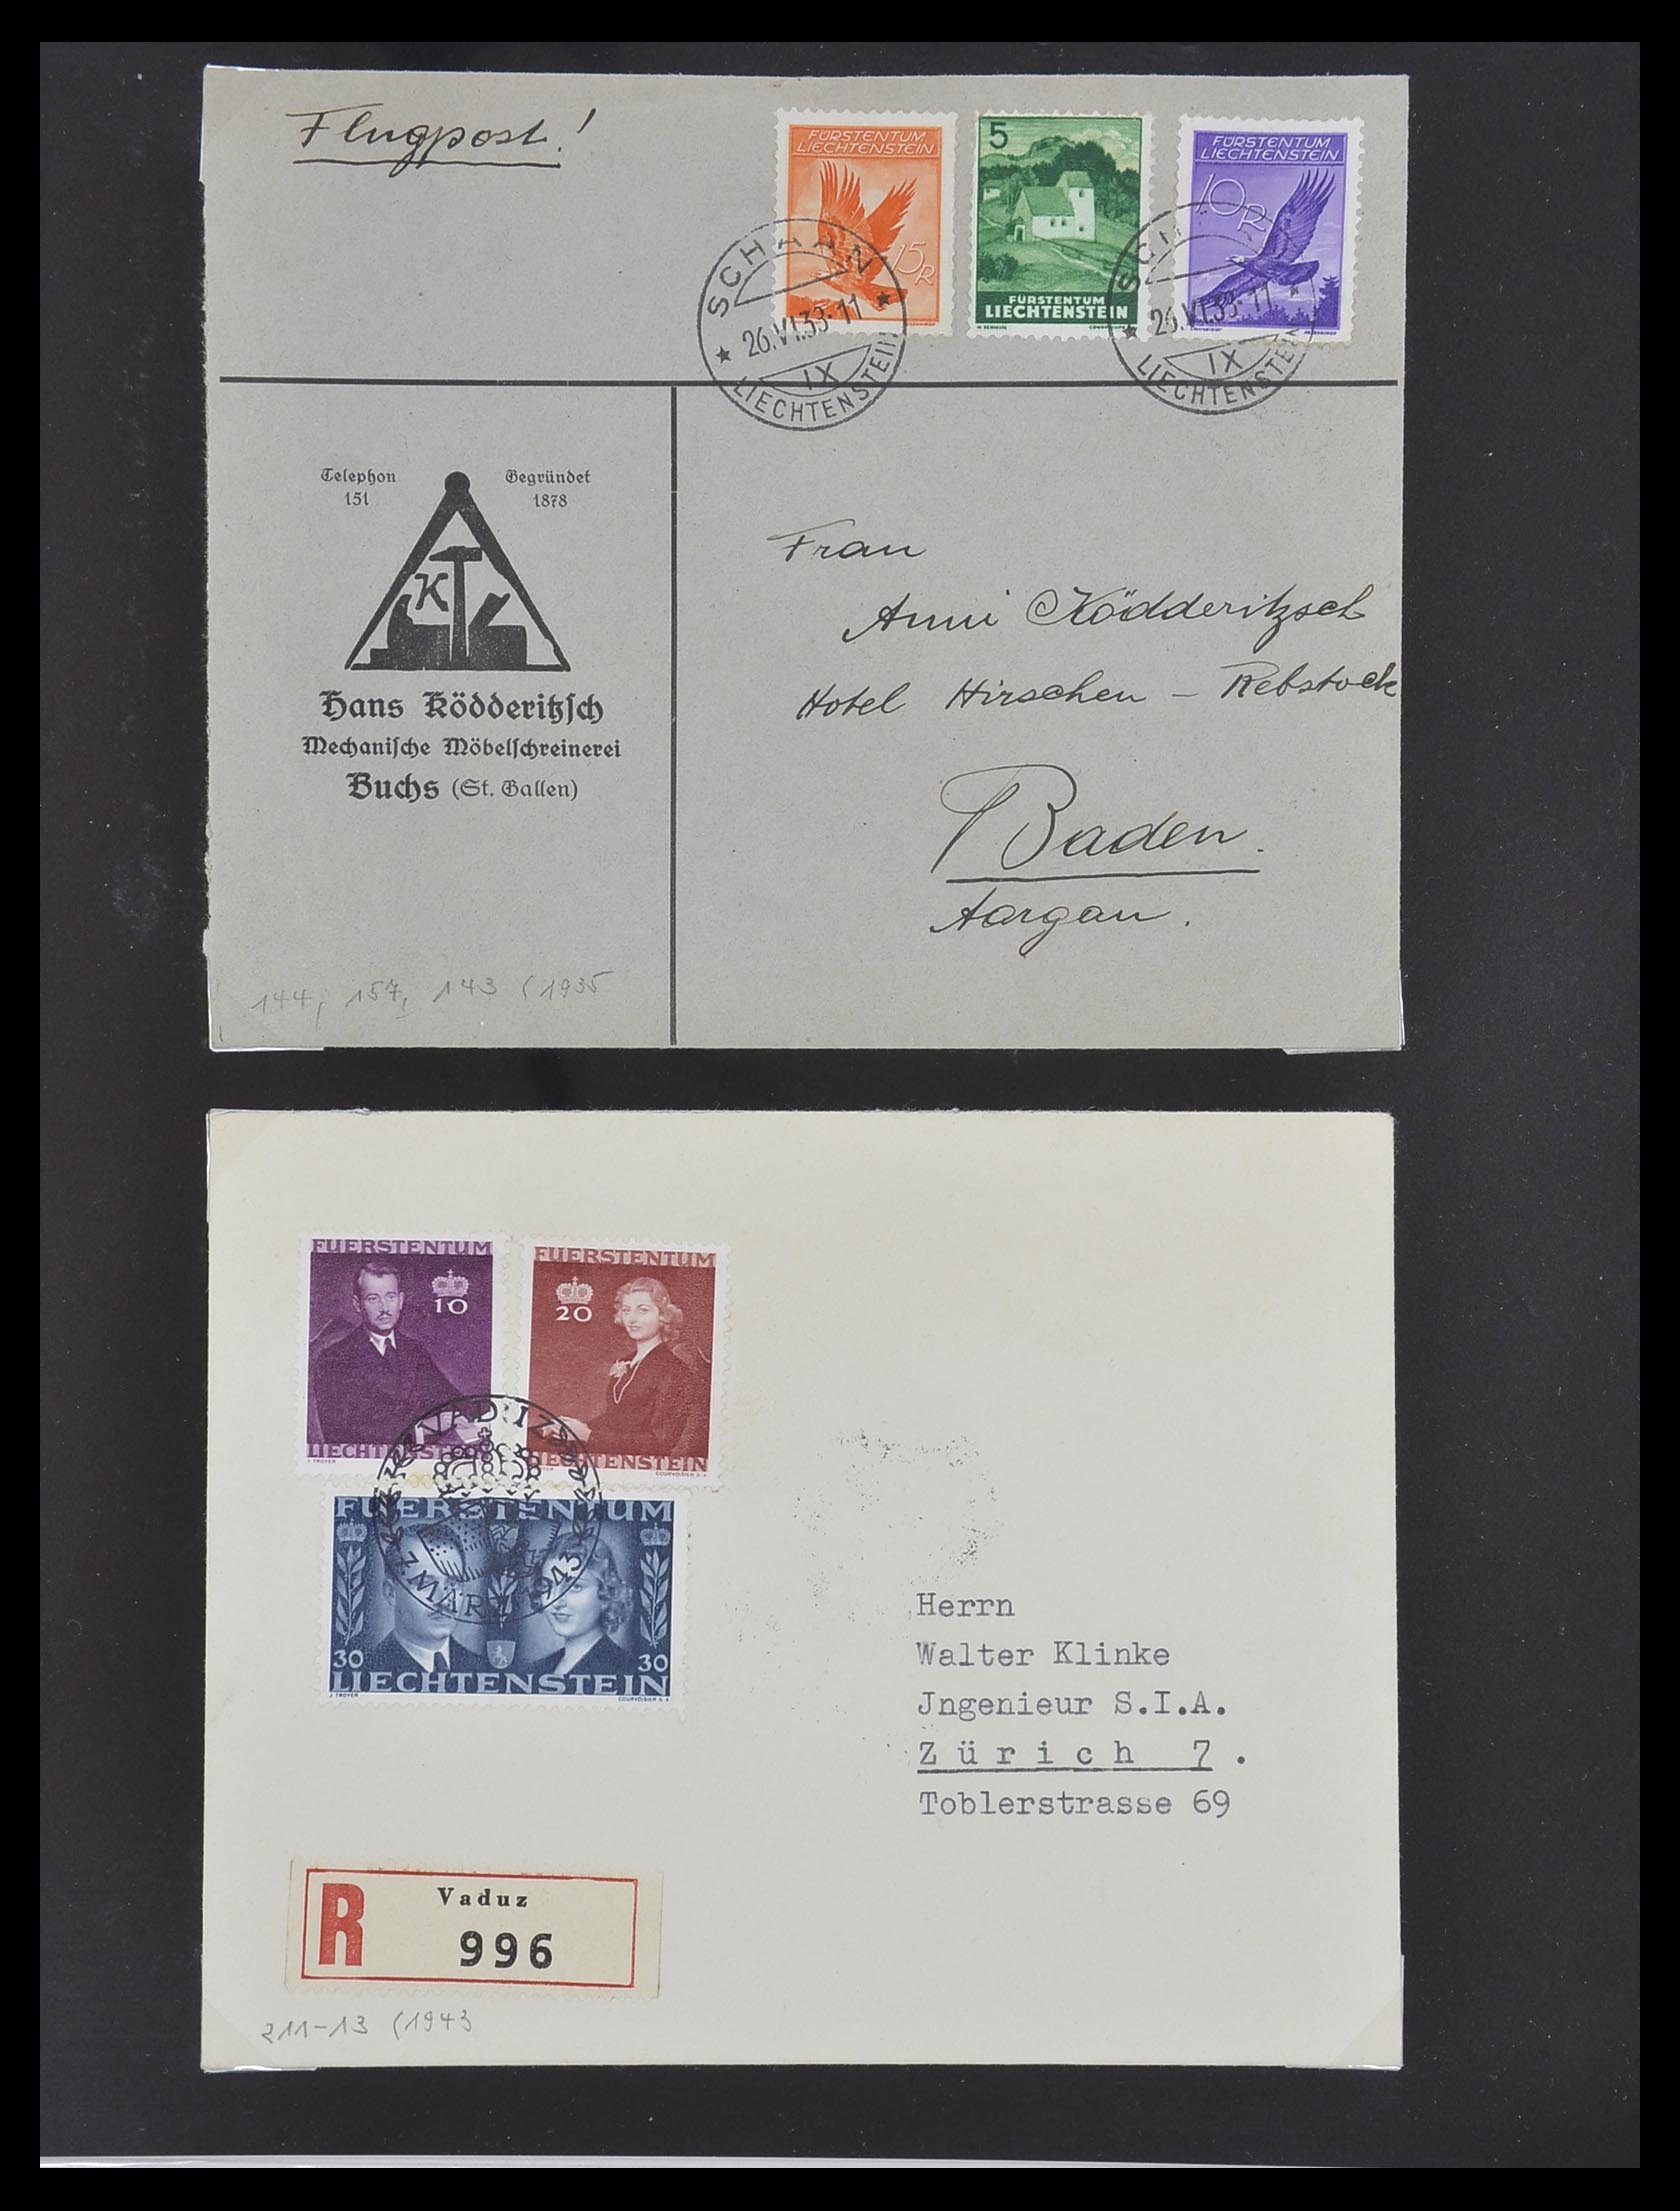 33493 029 - Stamp collection 33493 Liechtenstein 1912-2008.